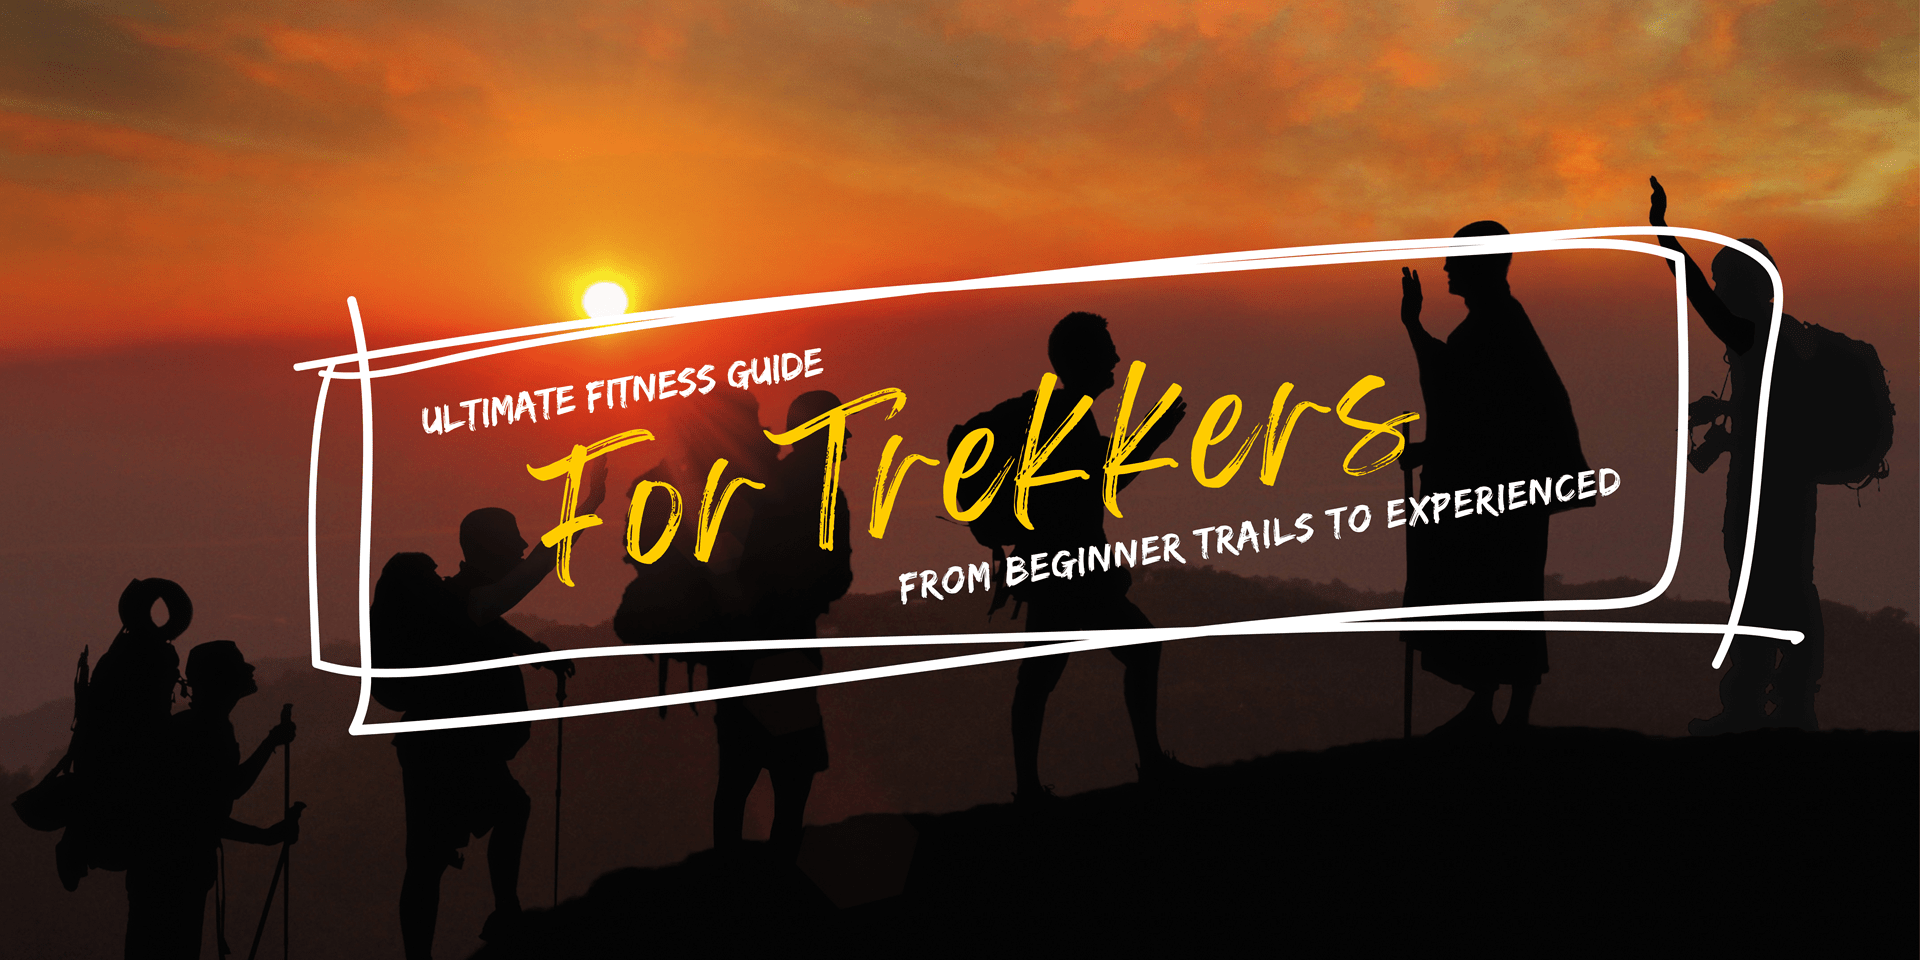 Ultimate Fitness Guide For Trekkers